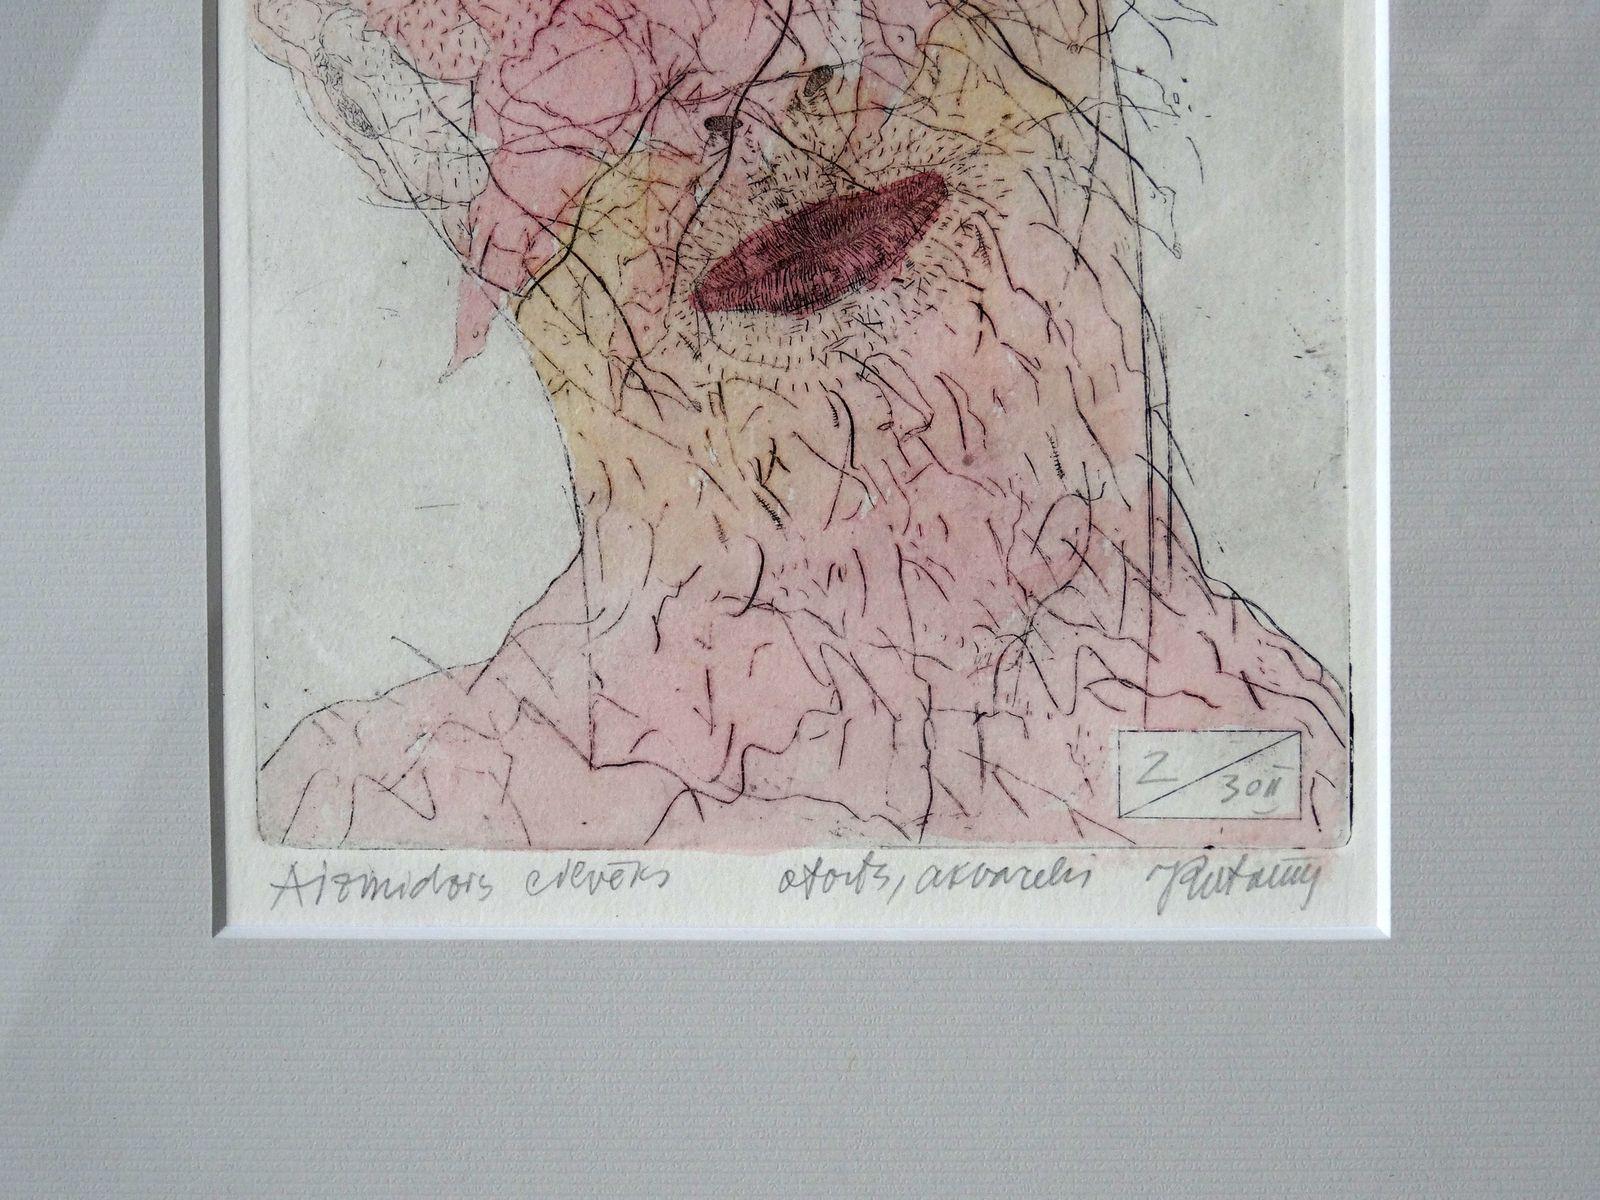 Schlafender Mann. Papier, Radierung, Aquarell, 19x13 cm (Surrealismus), Print, von Juris Putrams 